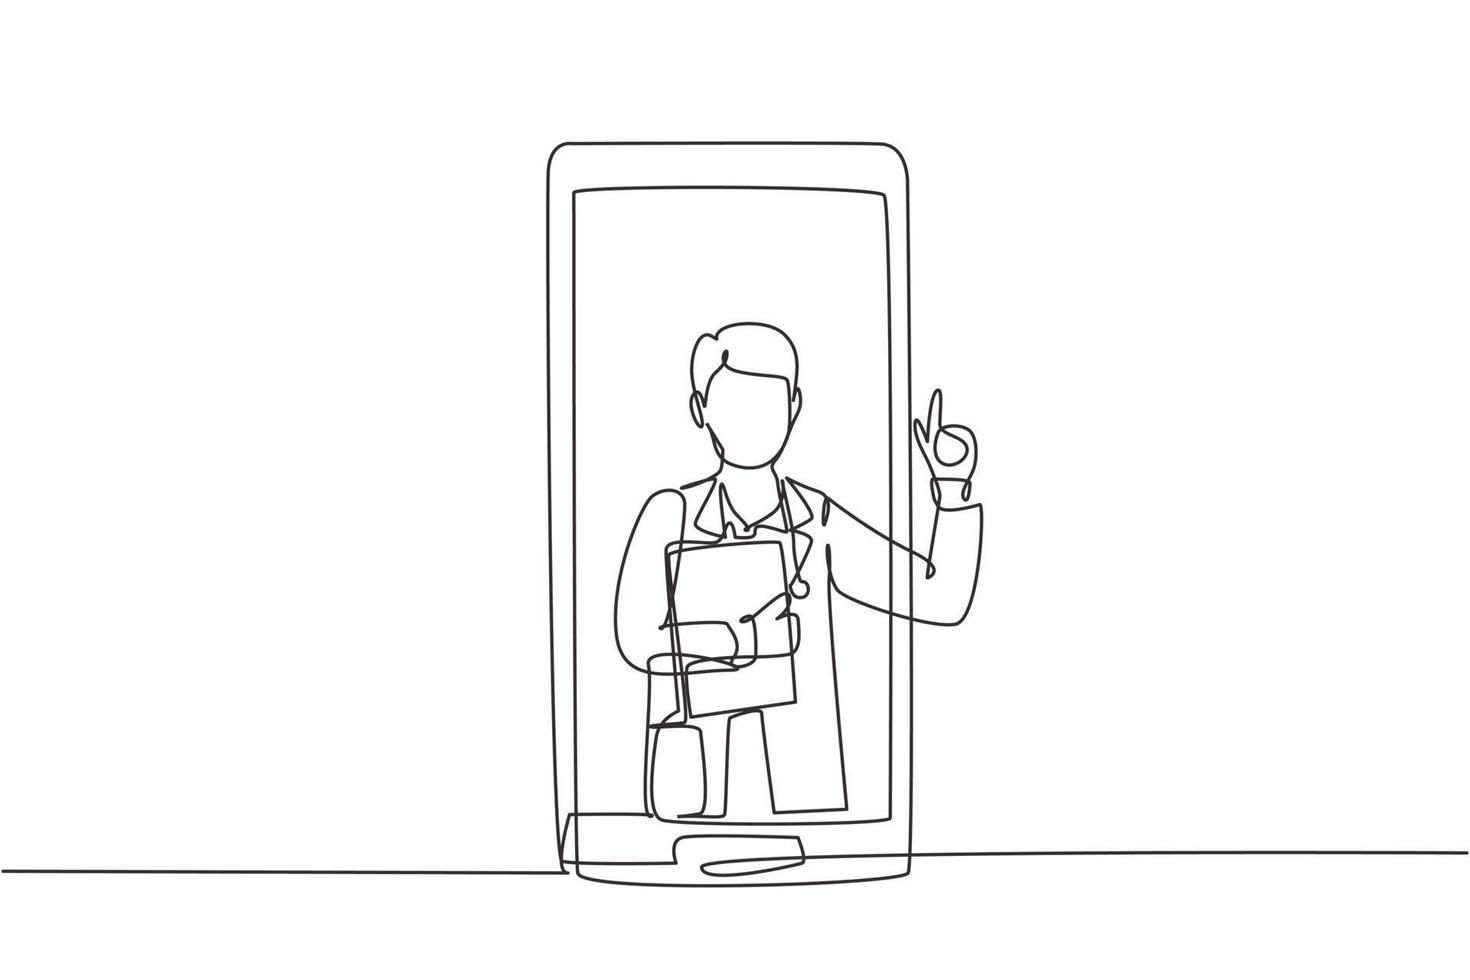 un singolo medico maschio di disegno a tratteggio esce dallo schermo dello smartphone tenendo gli appunti. servizi medici online, consulenza medica. illustrazione vettoriale grafica di disegno di disegno di linea continua moderna